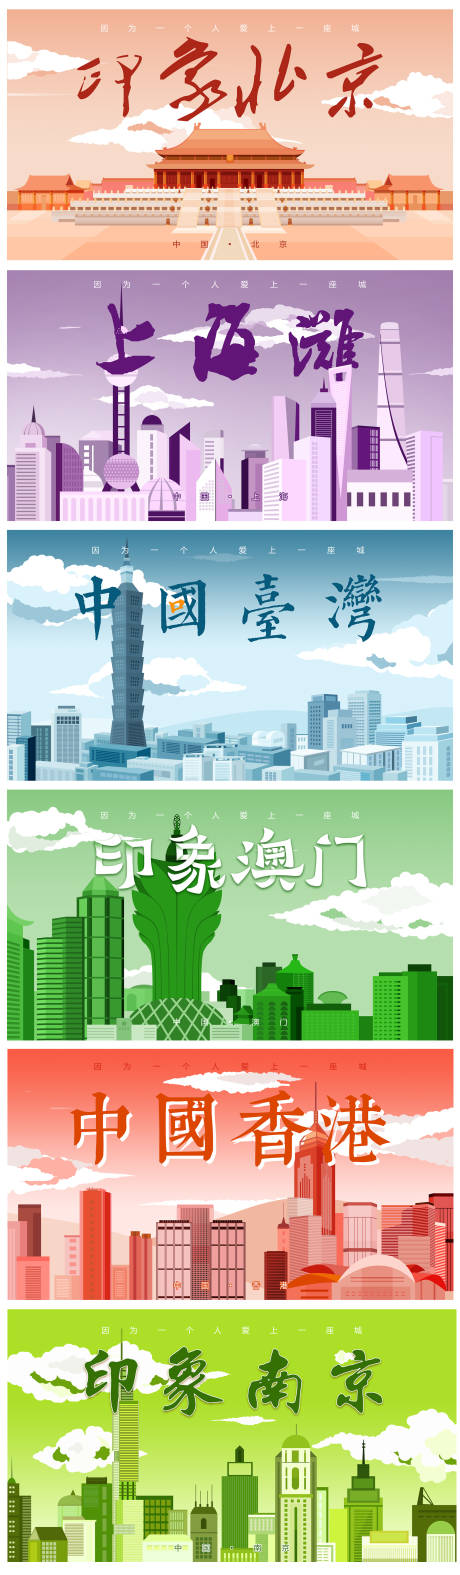 印象中国城市建筑插画广告展板海报